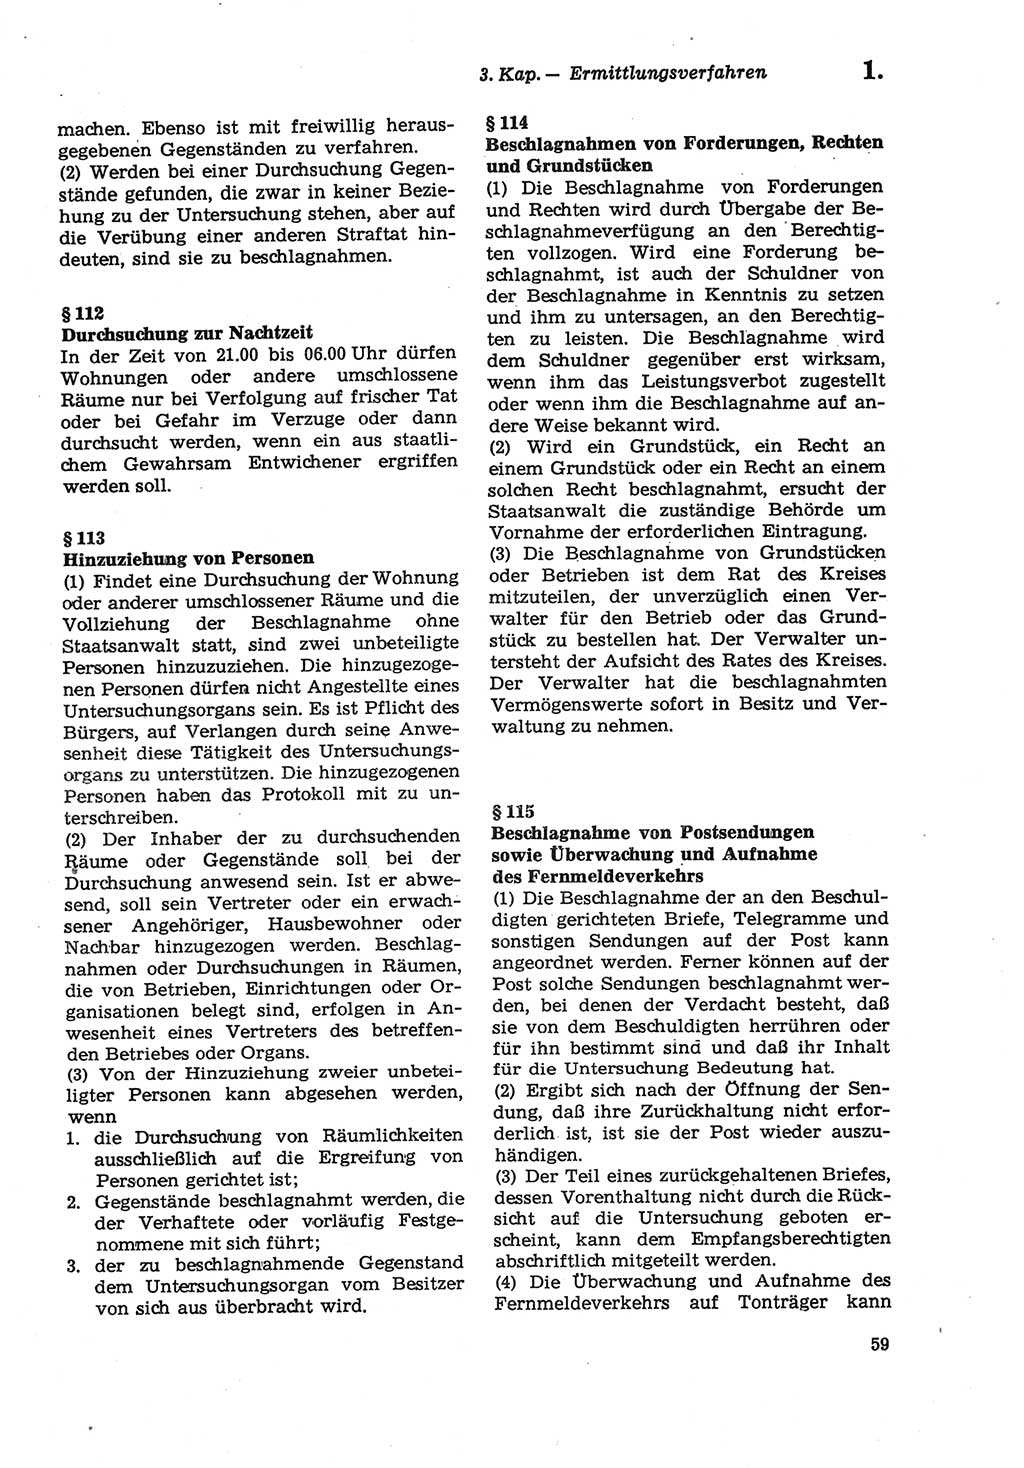 Strafprozeßordnung (StPO) der Deutschen Demokratischen Republik (DDR) sowie angrenzende Gesetze und Bestimmungen 1979, Seite 59 (StPO DDR Ges. Best. 1979, S. 59)